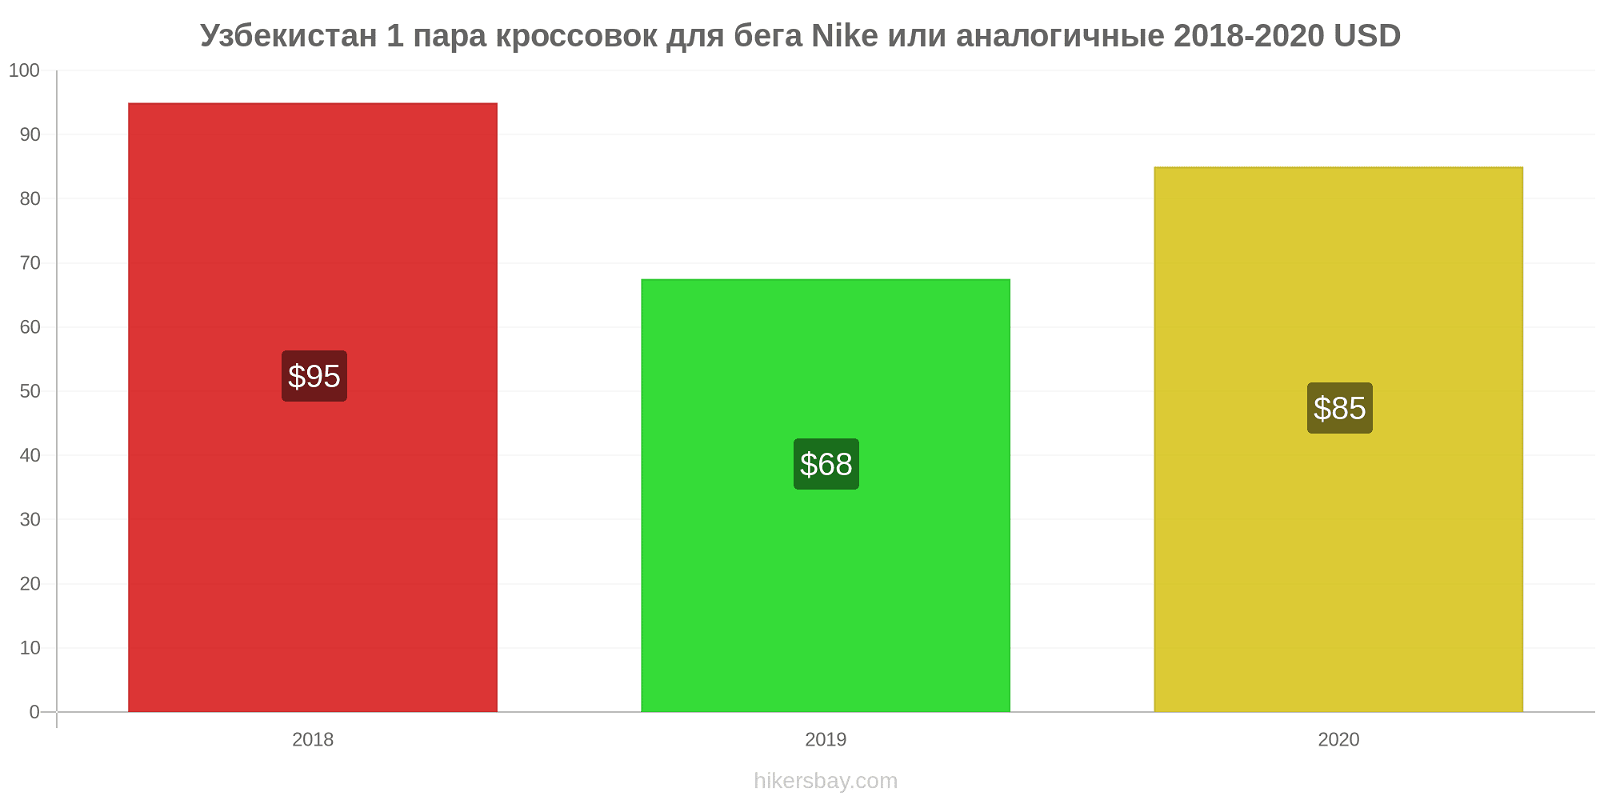 Узбекистан изменения цен 1 пара кроссовок для бега Nike или аналогичные hikersbay.com